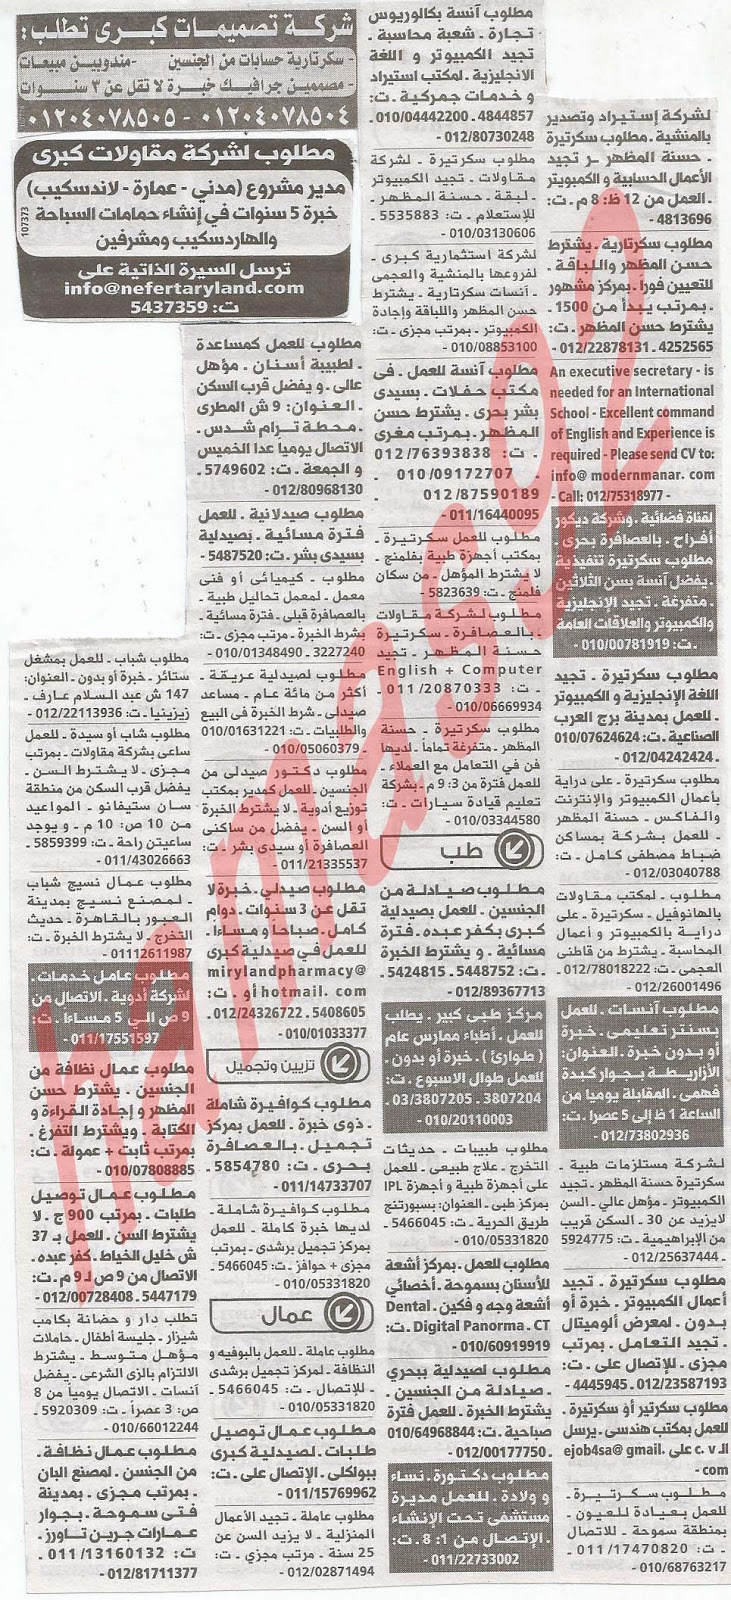 وظائف جريدة الوسيط الاسكندرية الاثنين 11/2/2013 %D9%88+%D8%B3+%D8%B3+1